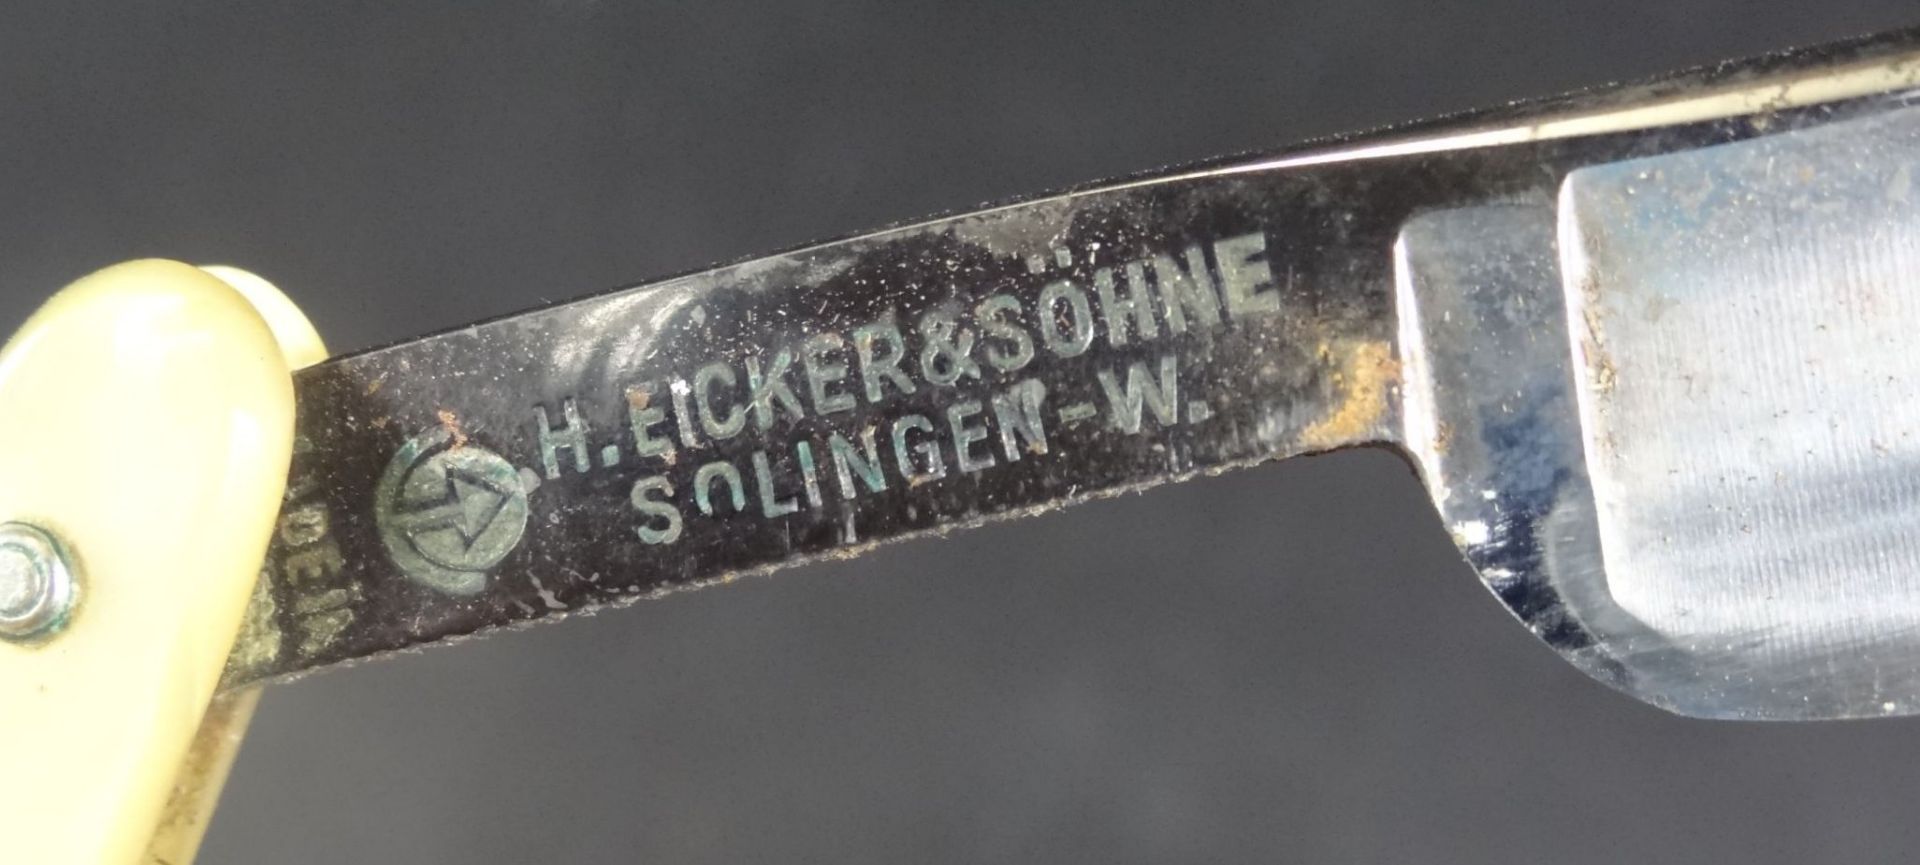 3x alte Rasiermesser, Eicker&Söhne, Alters-u. Gebrauchsspure- - -22.61 % buyer's premium on the - Bild 5 aus 5